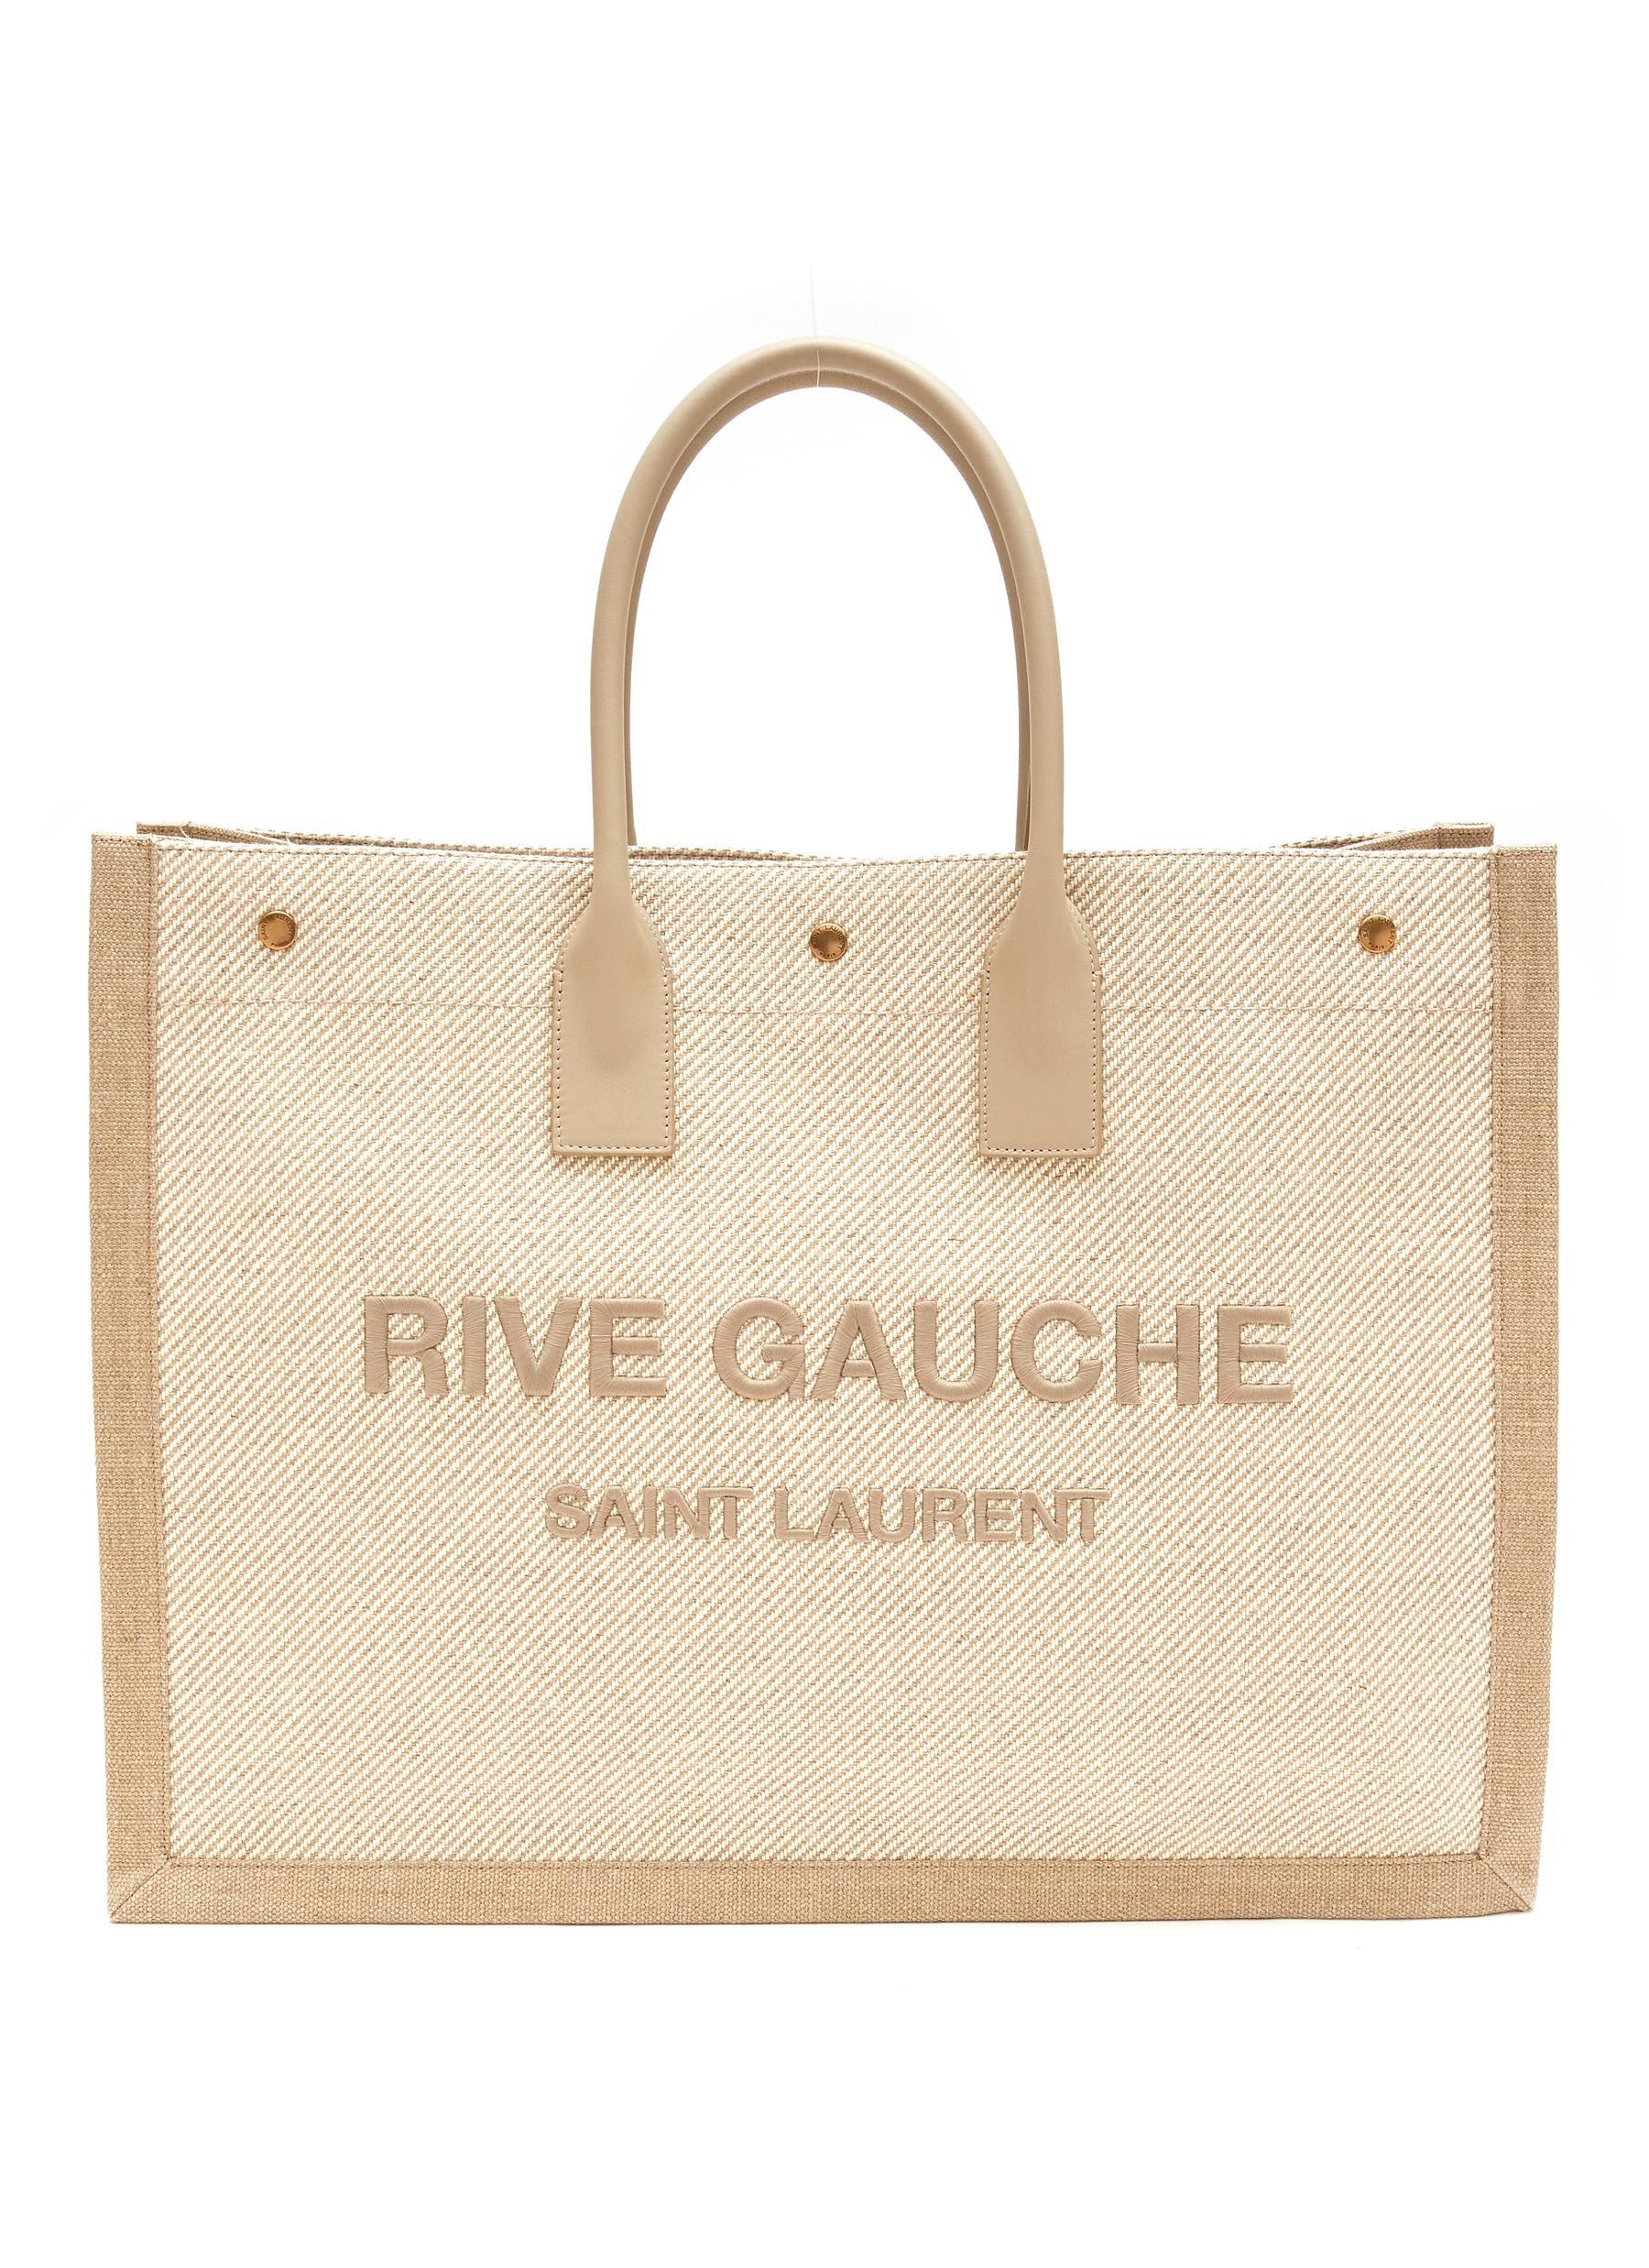 â€˜RIVE GAUCHE’ TOTE BAG